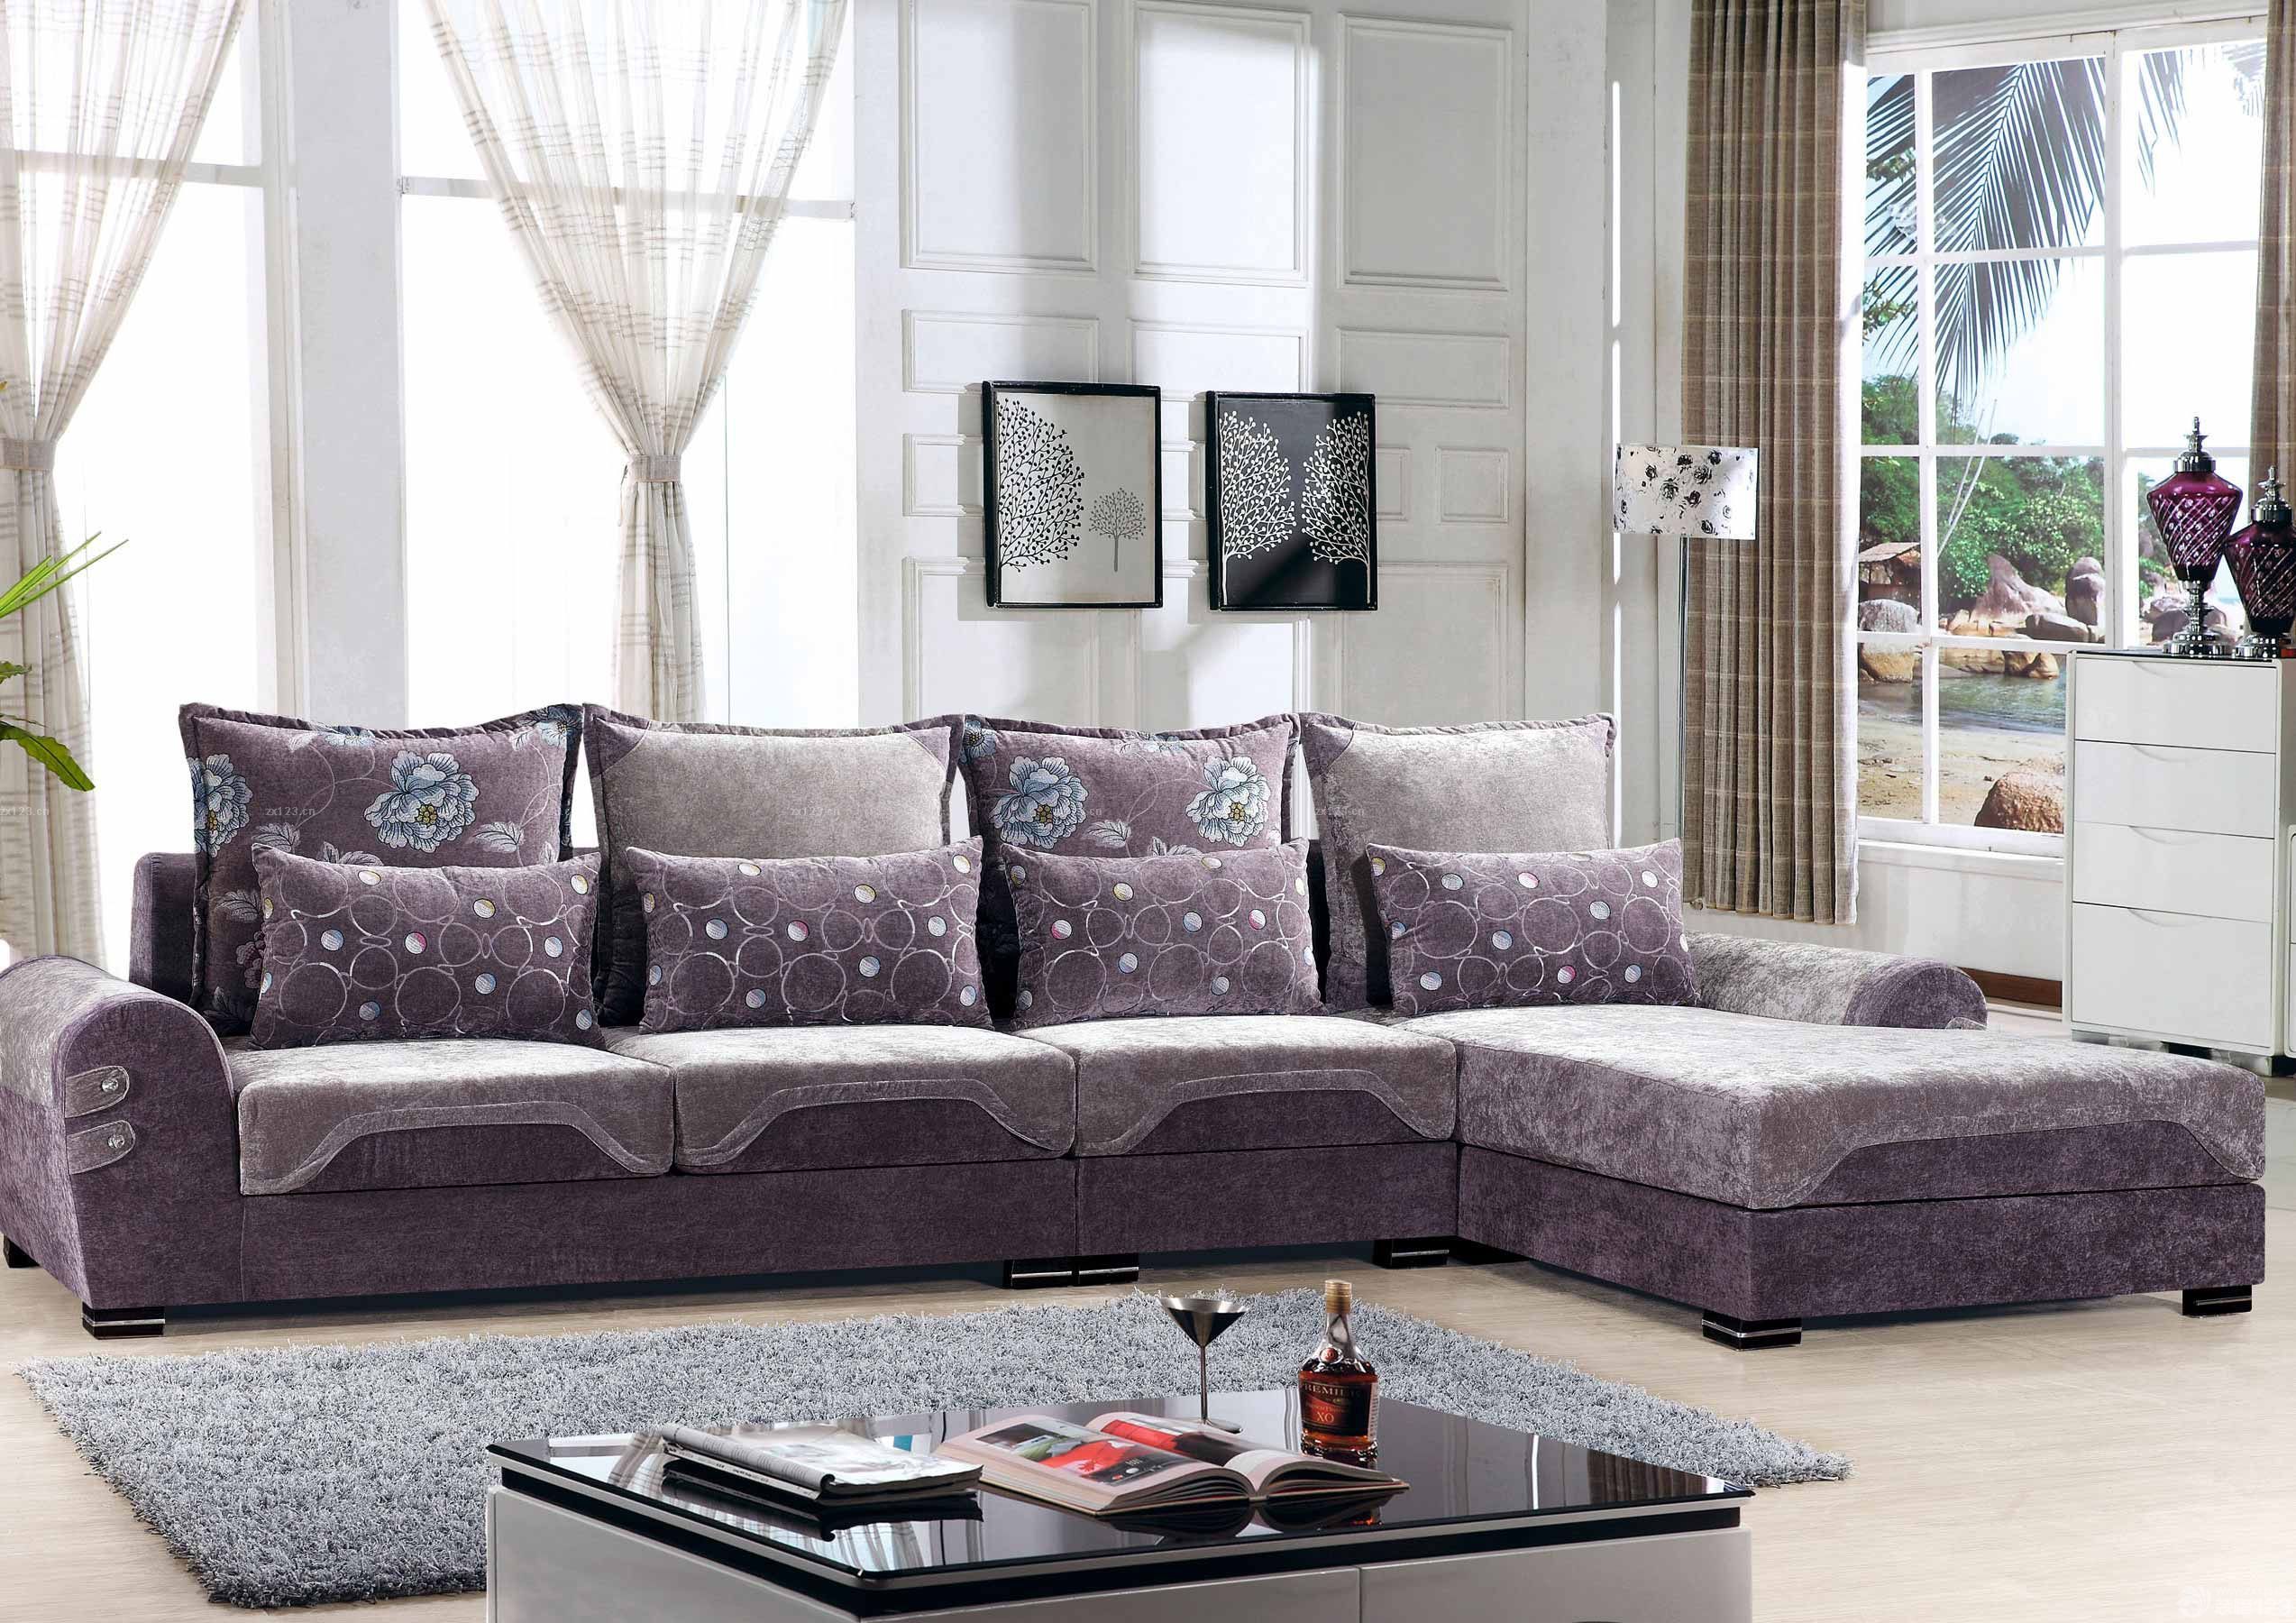 美式品牌布艺沙发坐垫图片